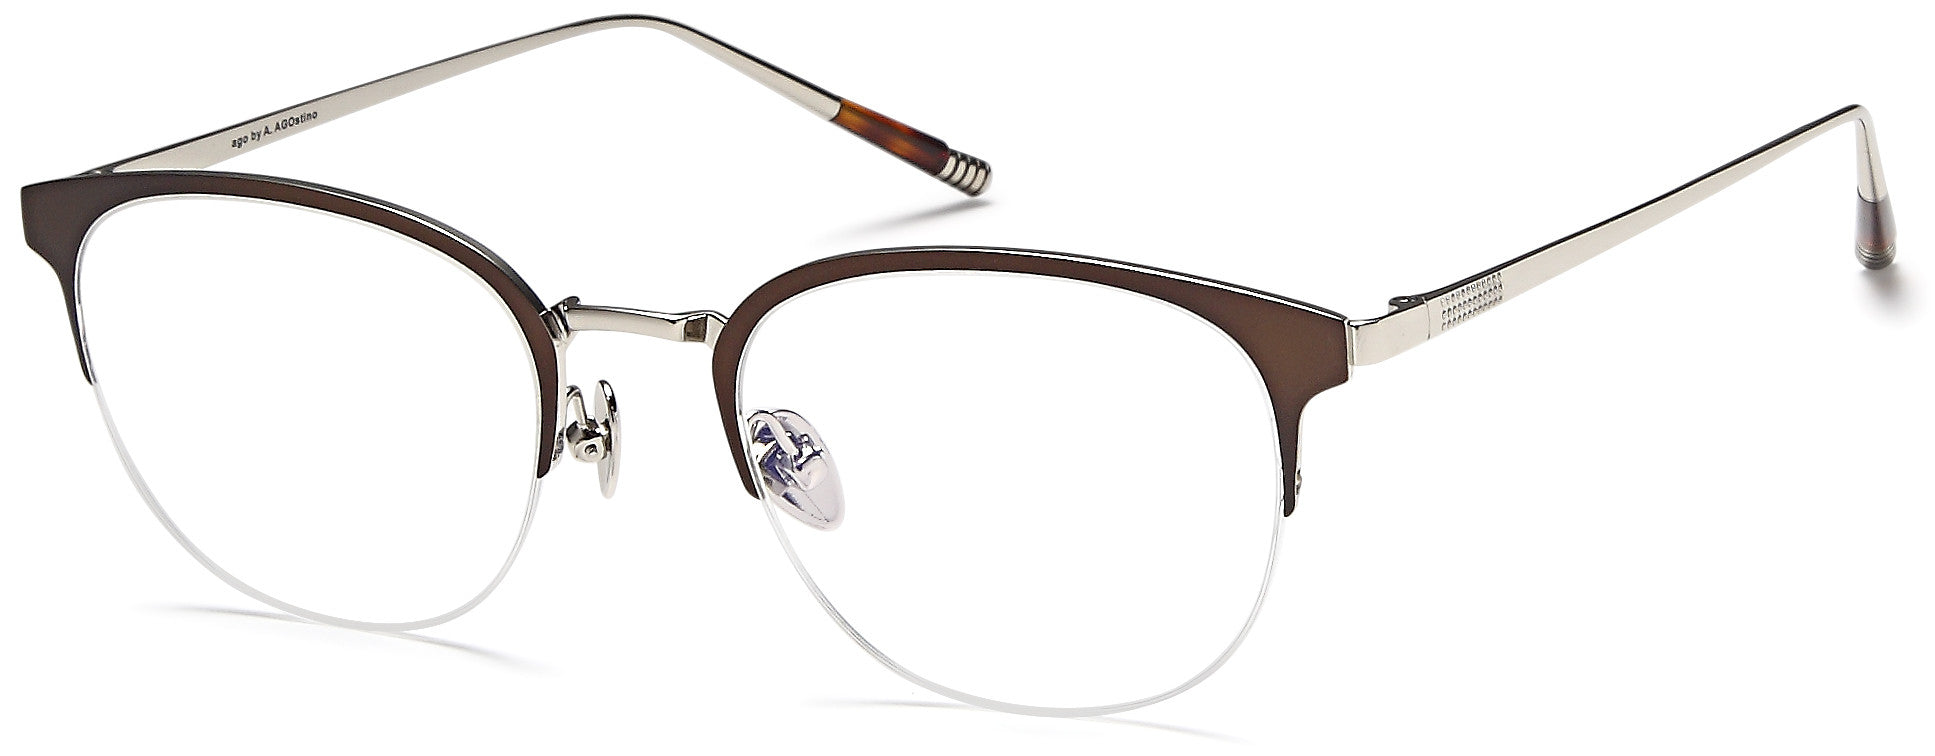 AGO Eyeglasses MF90007 - Go-Readers.com